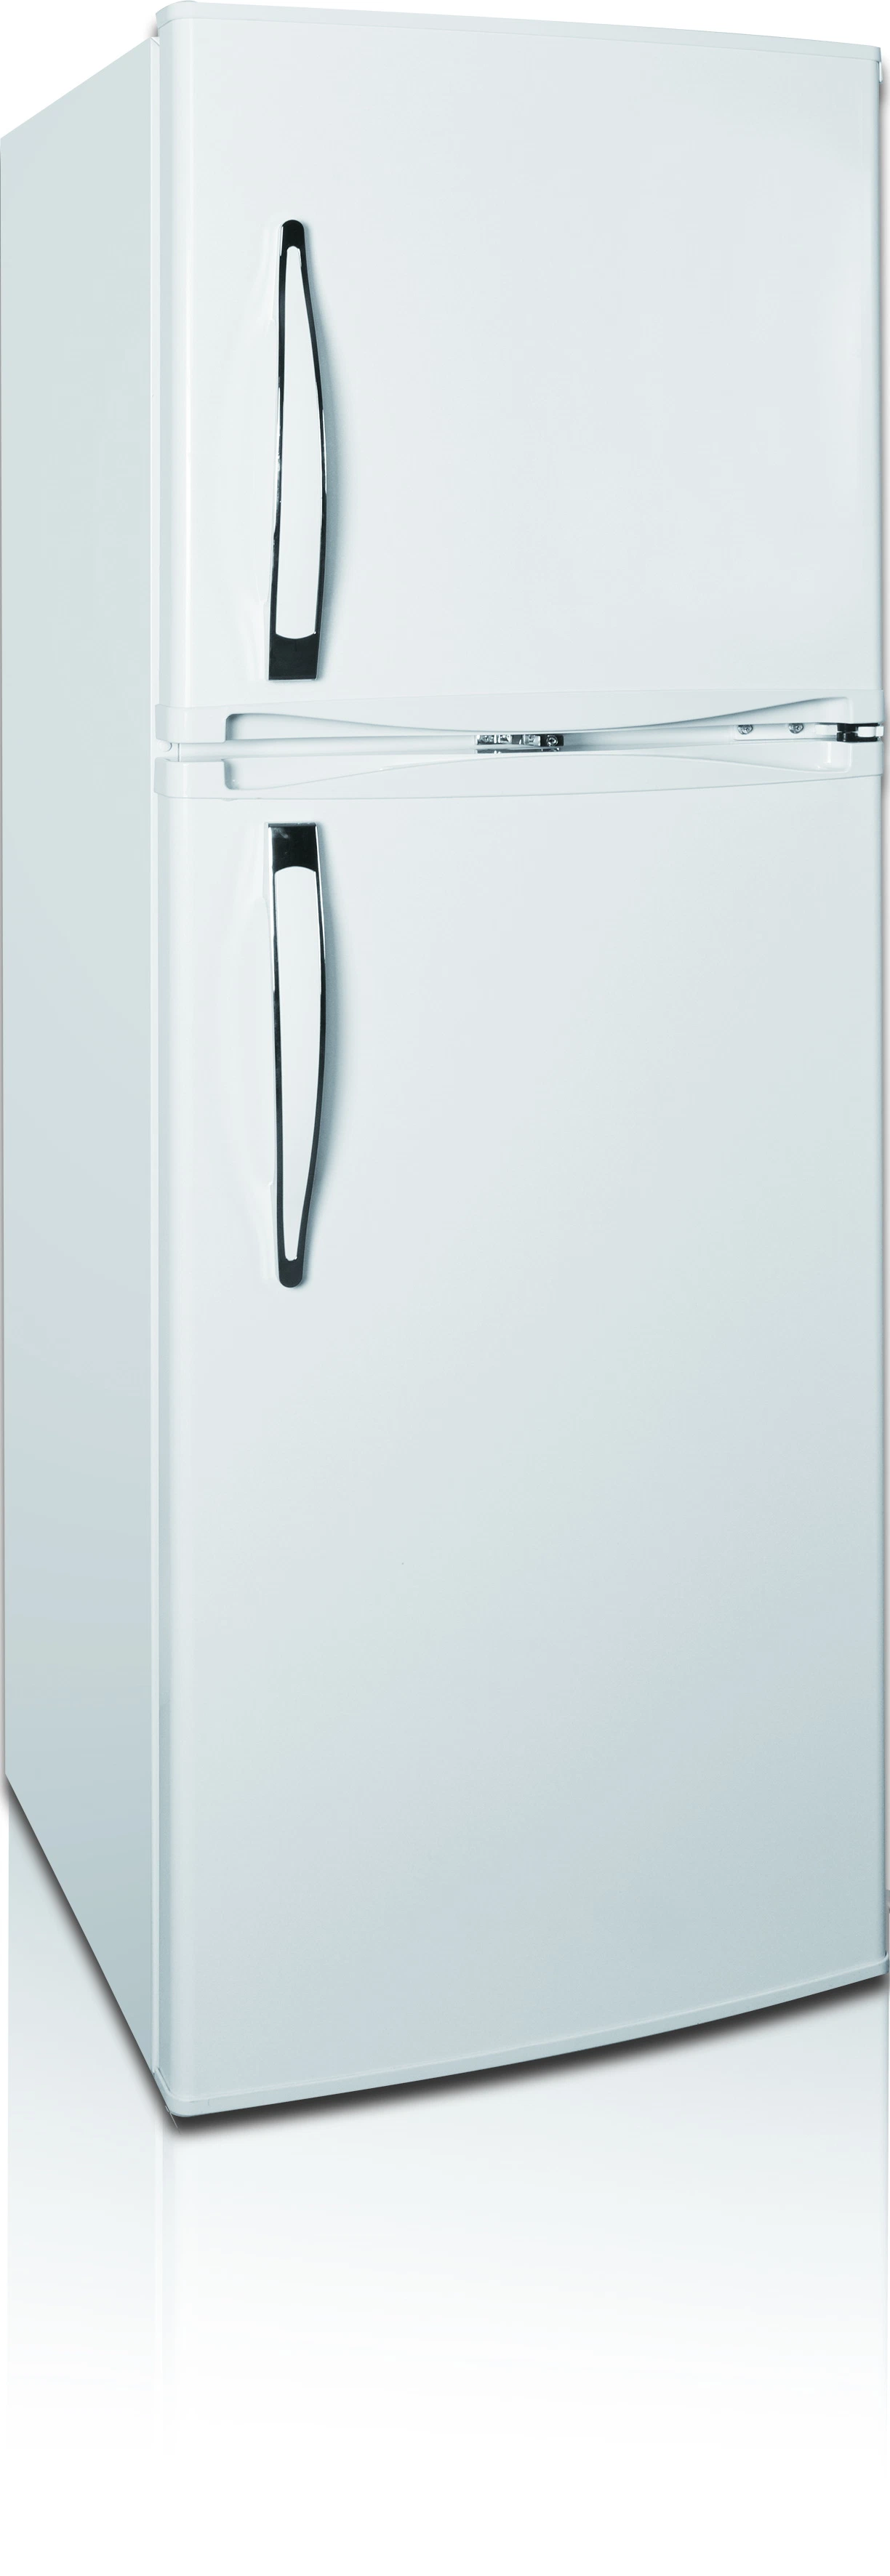 220L-230L بيع ساخنة ثلاجة الثلاجة ذات أعلى ثلاجة الثلاجة الثلاجة على شكل صندوق الثلاجة الرئيسية استخدم